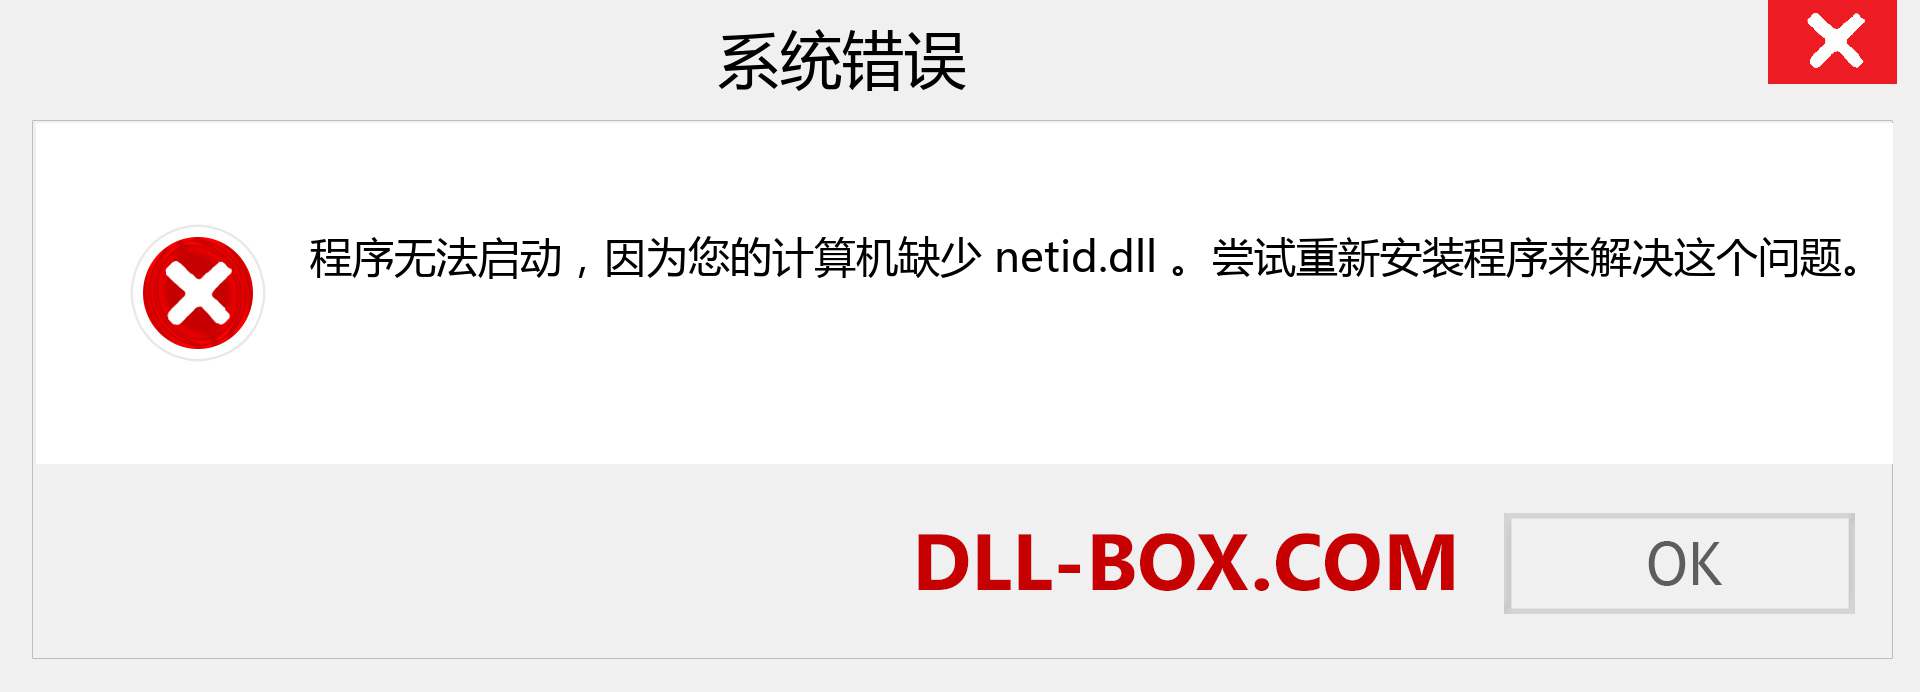 netid.dll 文件丢失？。 适用于 Windows 7、8、10 的下载 - 修复 Windows、照片、图像上的 netid dll 丢失错误